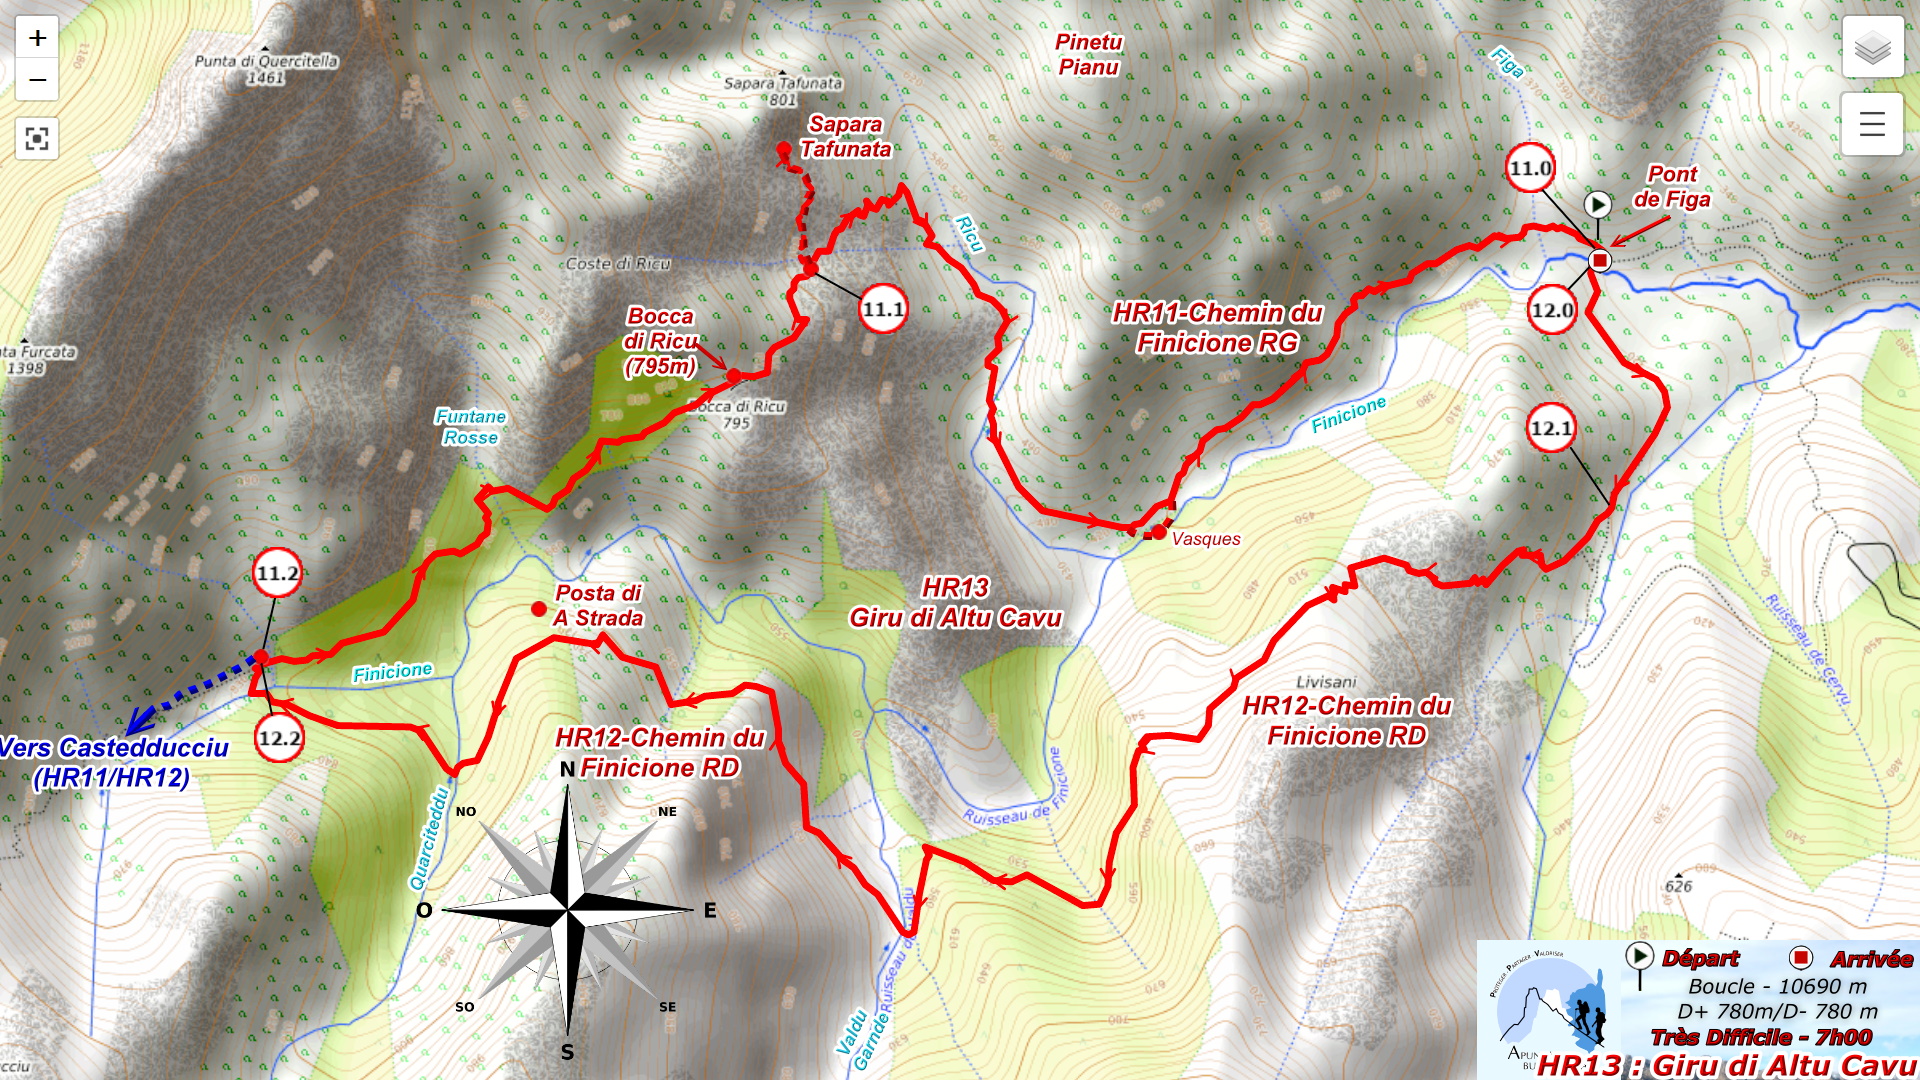 Plan HR13 : Giru di Altu Cavu